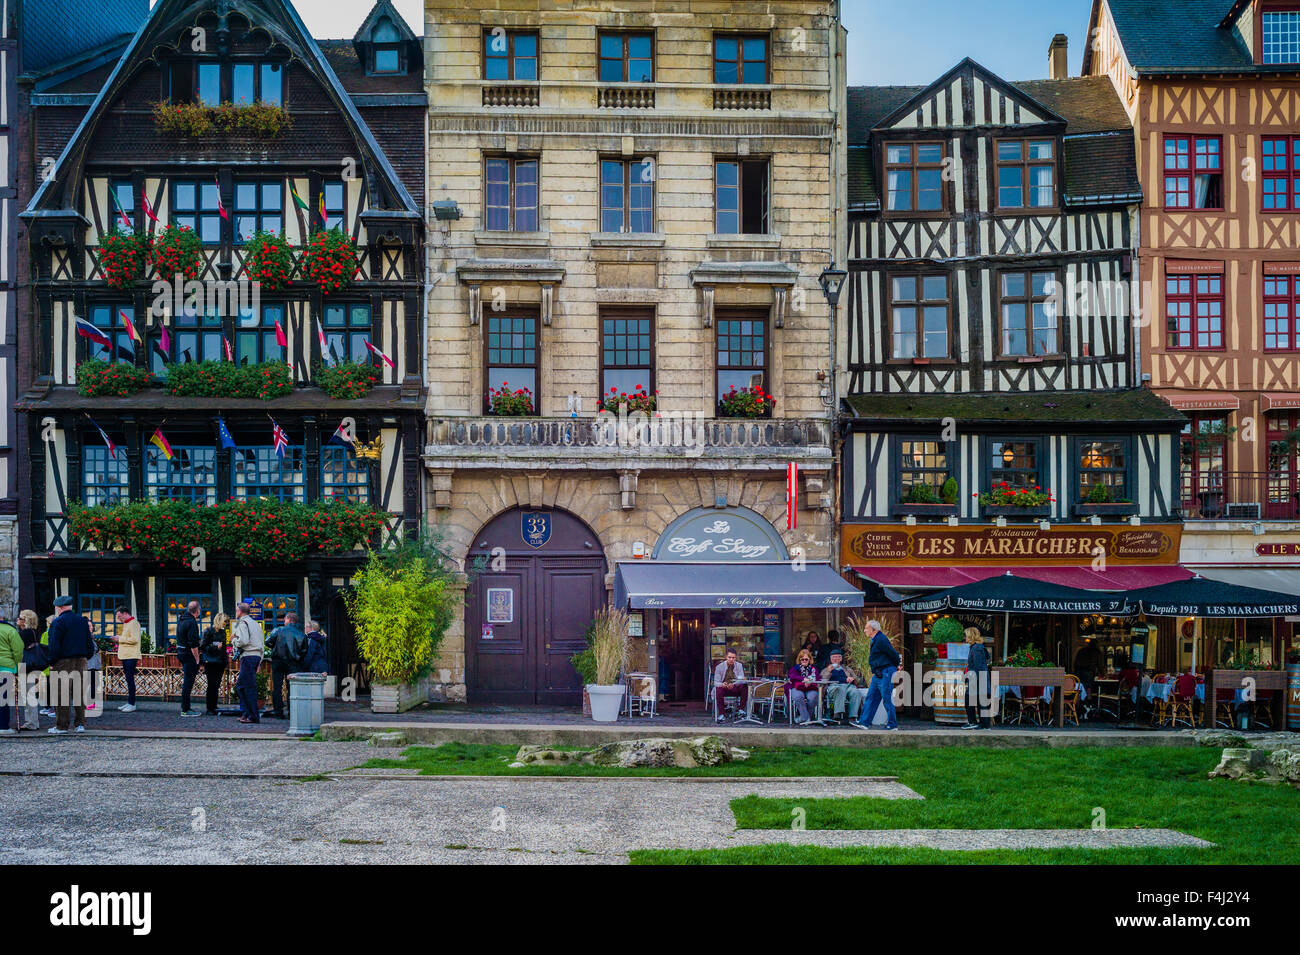 Historic buildings line the Place du Vieux Marché in Rouen, France. Stock Photo